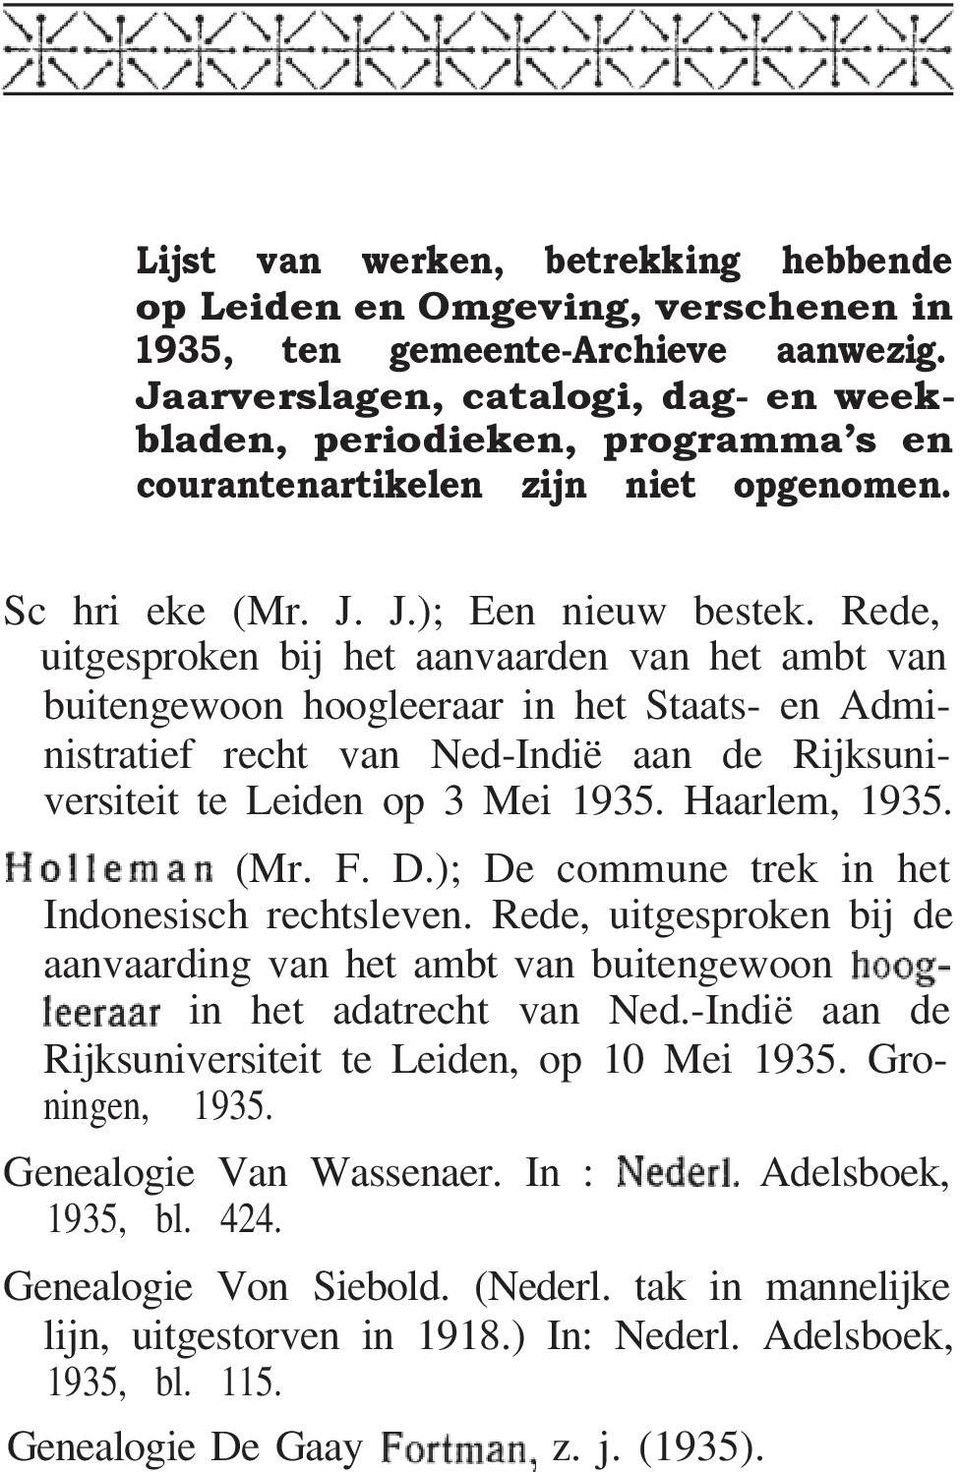 Rede, uitgesproken bij het aanvaarden van het ambt van buitengewoon hoogleeraar in het Staats- en Administratief recht van Ned-Indië aan de Rijksuniversiteit te Leiden op 3 Mei 1935. Haarlem, 1935.